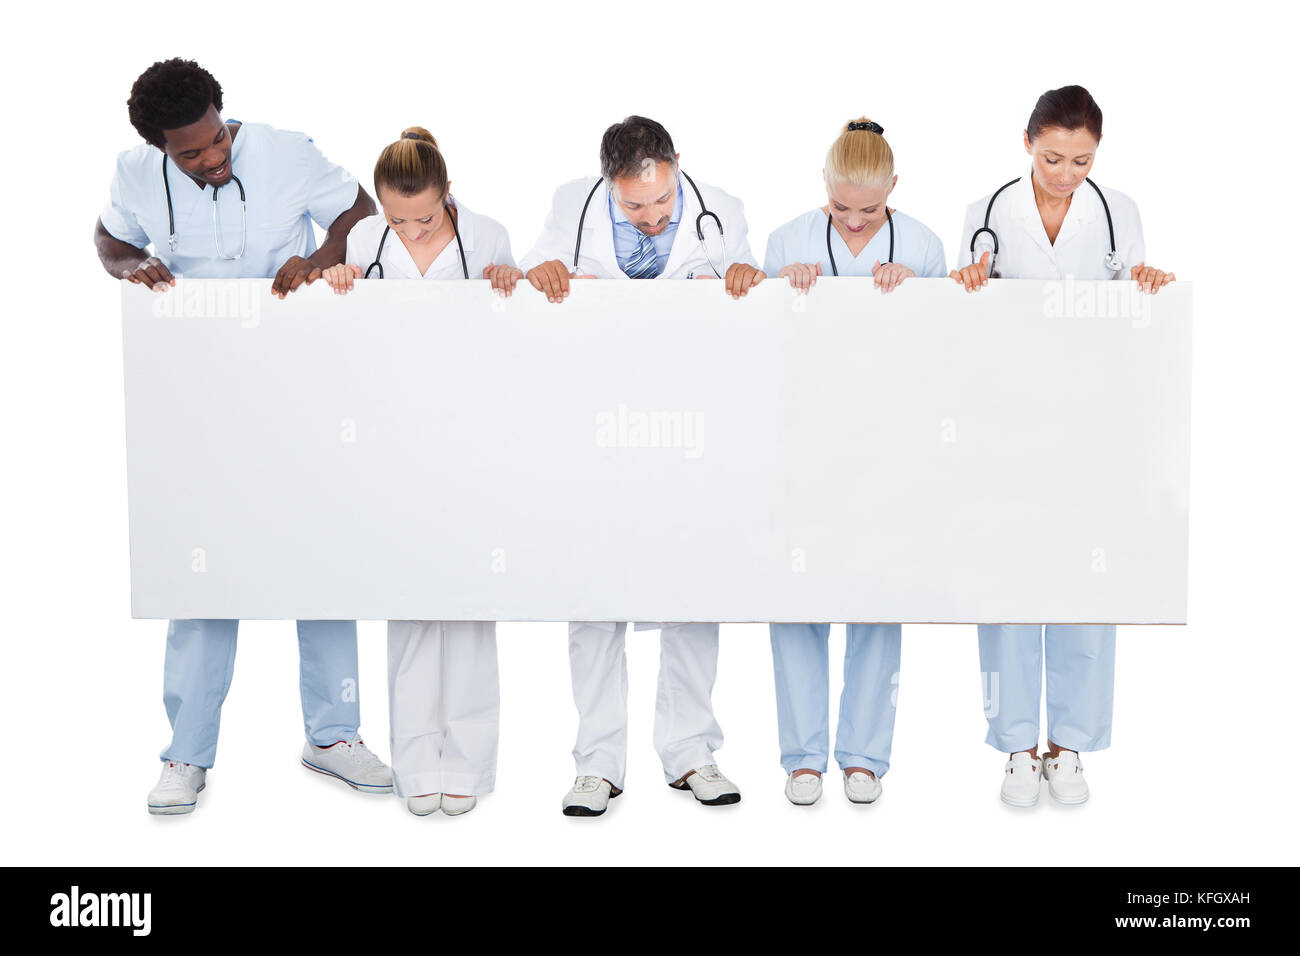 Toute l'équipe médicale multiethnique regardant un panneau d'affichage vierge sur fond blanc Banque D'Images